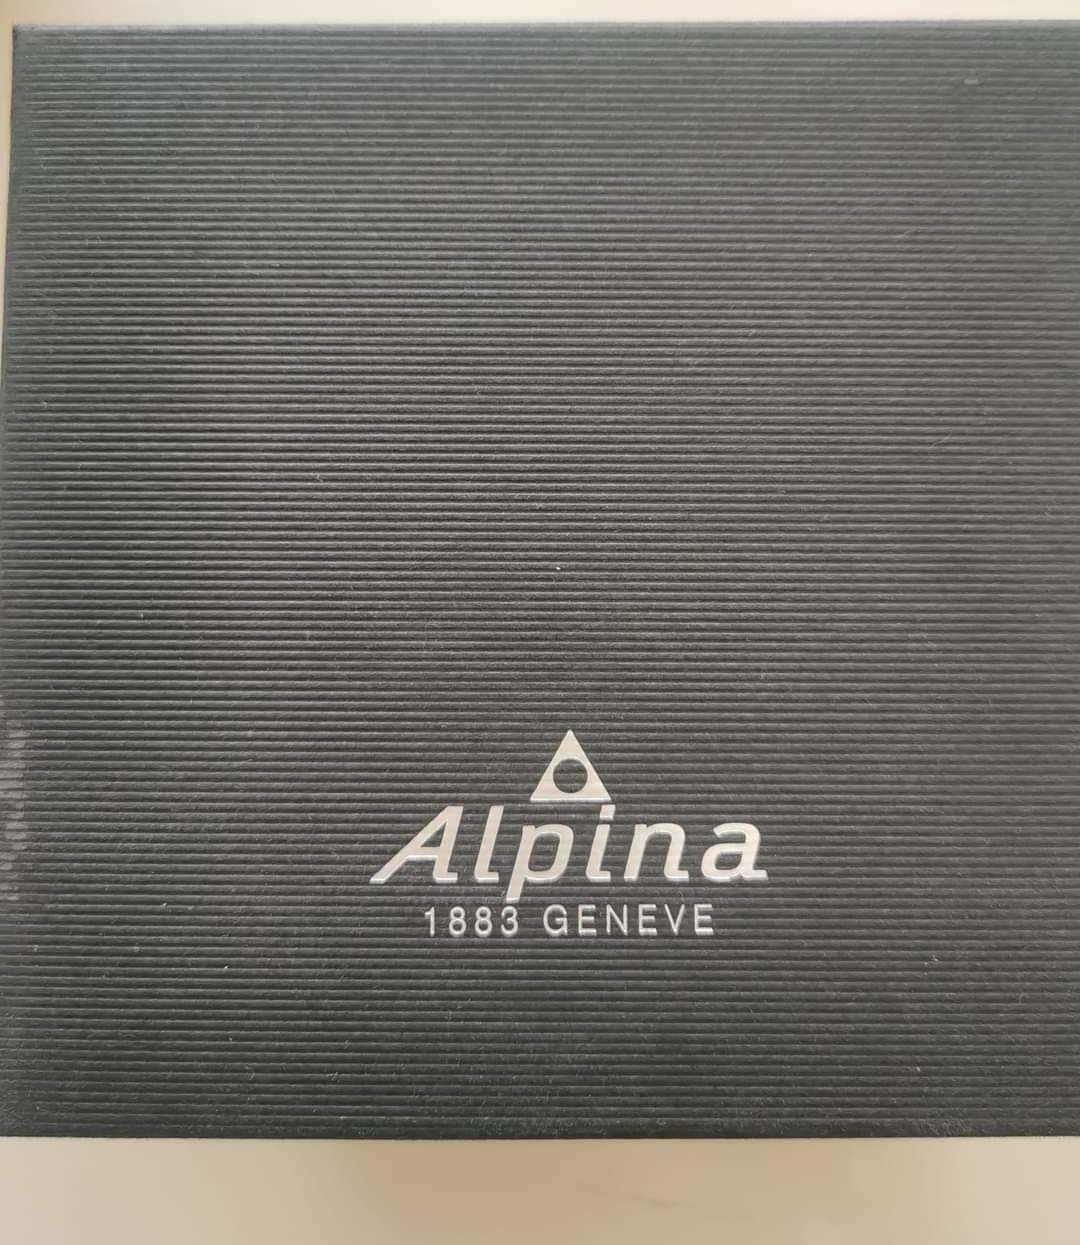 Pre-Owned Alpina Smart watch AL-283LB05AQ6B